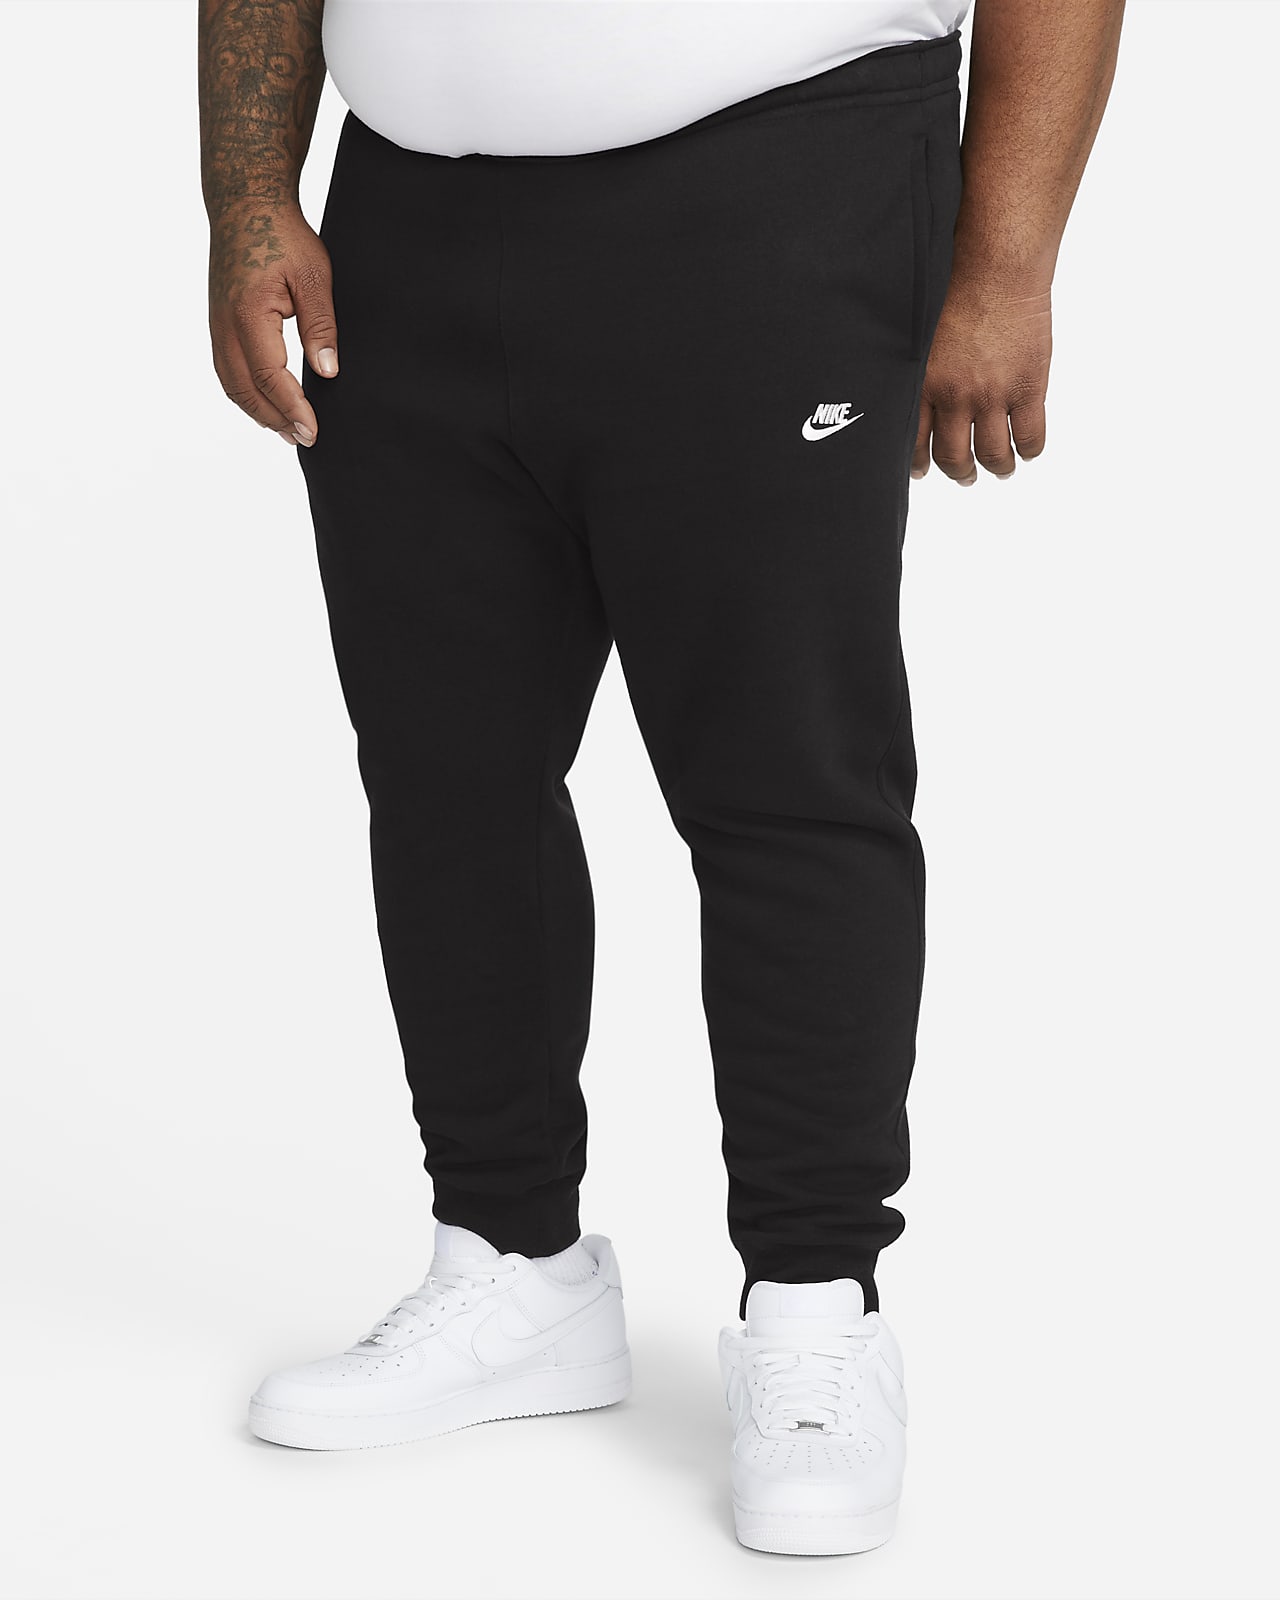 Nike Men's Sportswear Club Fleece Jogger Pants